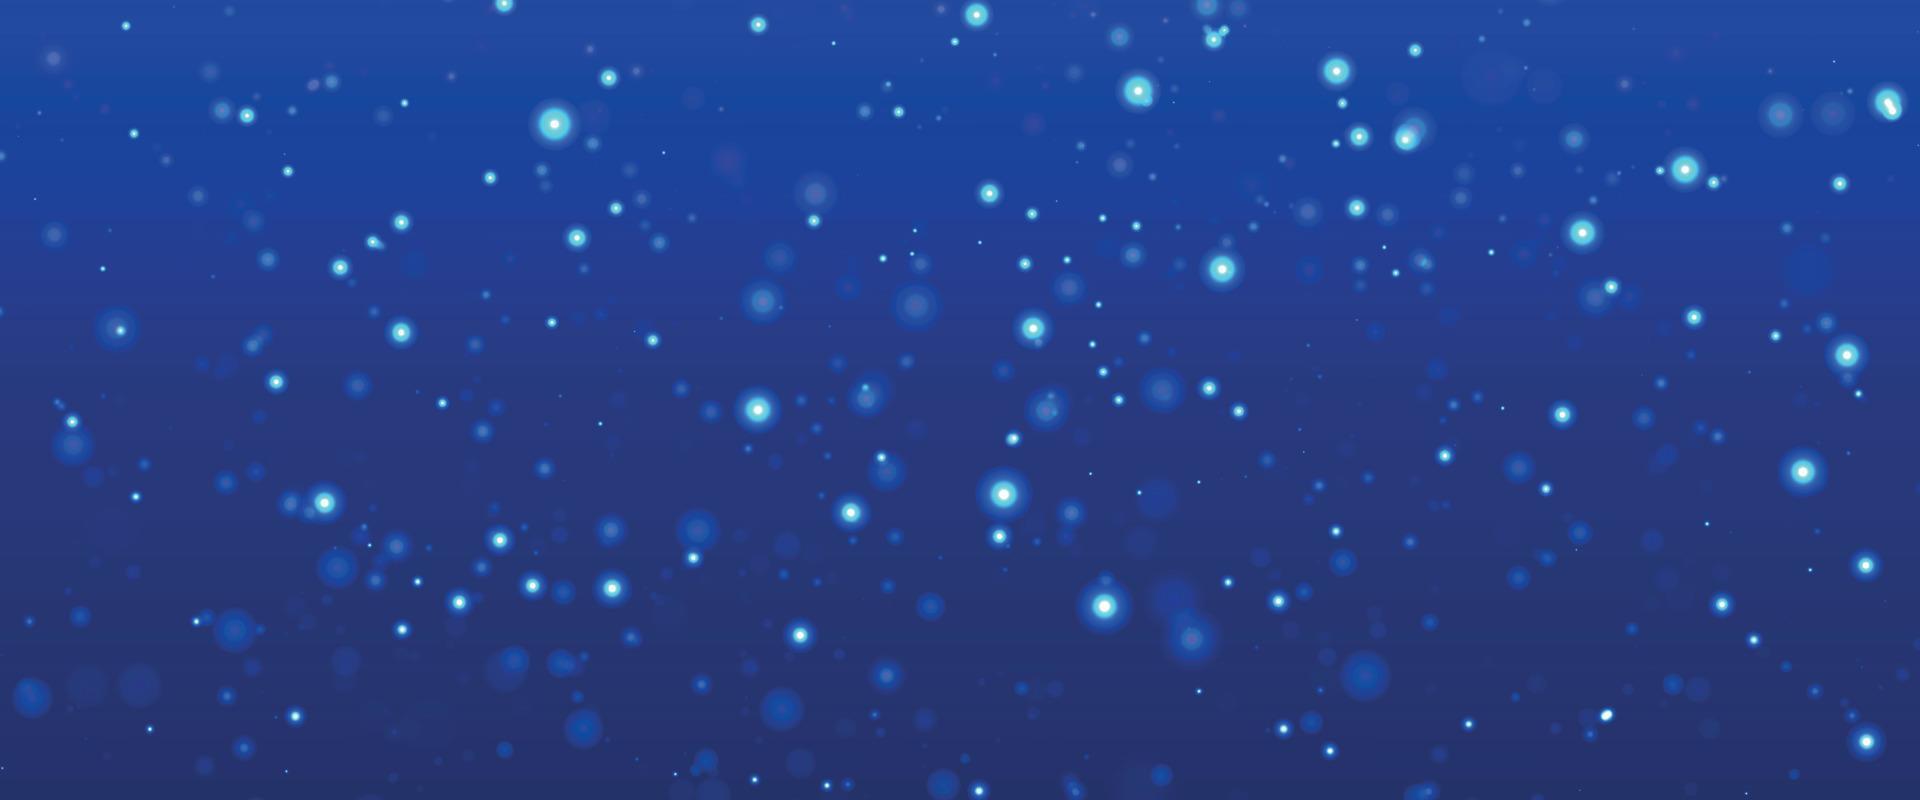 färgrik bakgrund suddigt snö. bokeh bakgrund med snöflinga. vinter- glittrande snöflingor virvla runt bokeh bakgrund, bakgrund med gnistrande blå stjärnor. snöflinga vinter- säsong. vektor